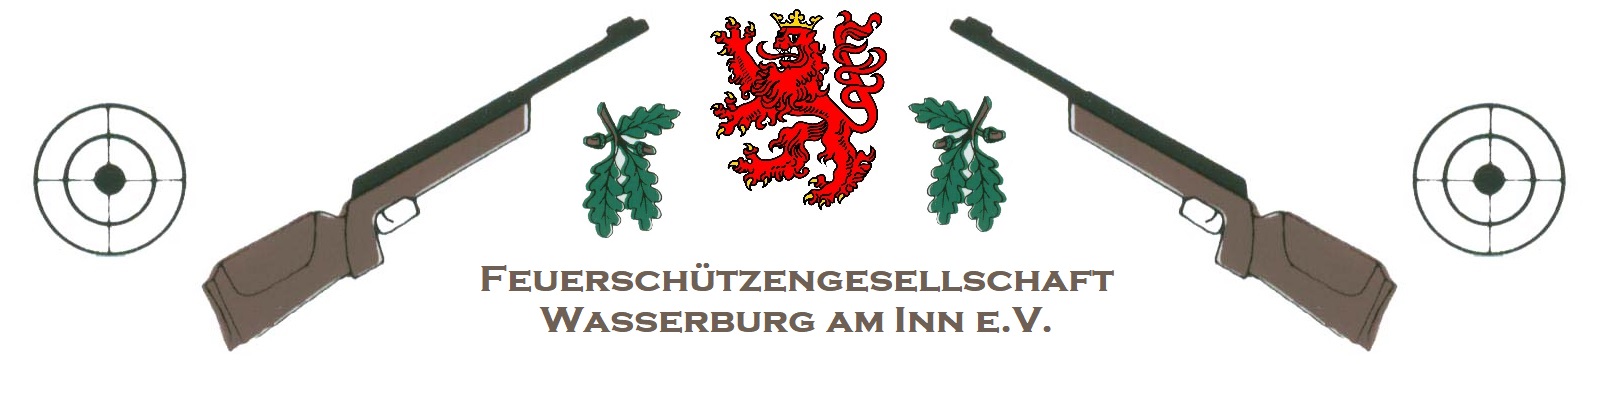 FSG Wasserburg am Inn e.V.